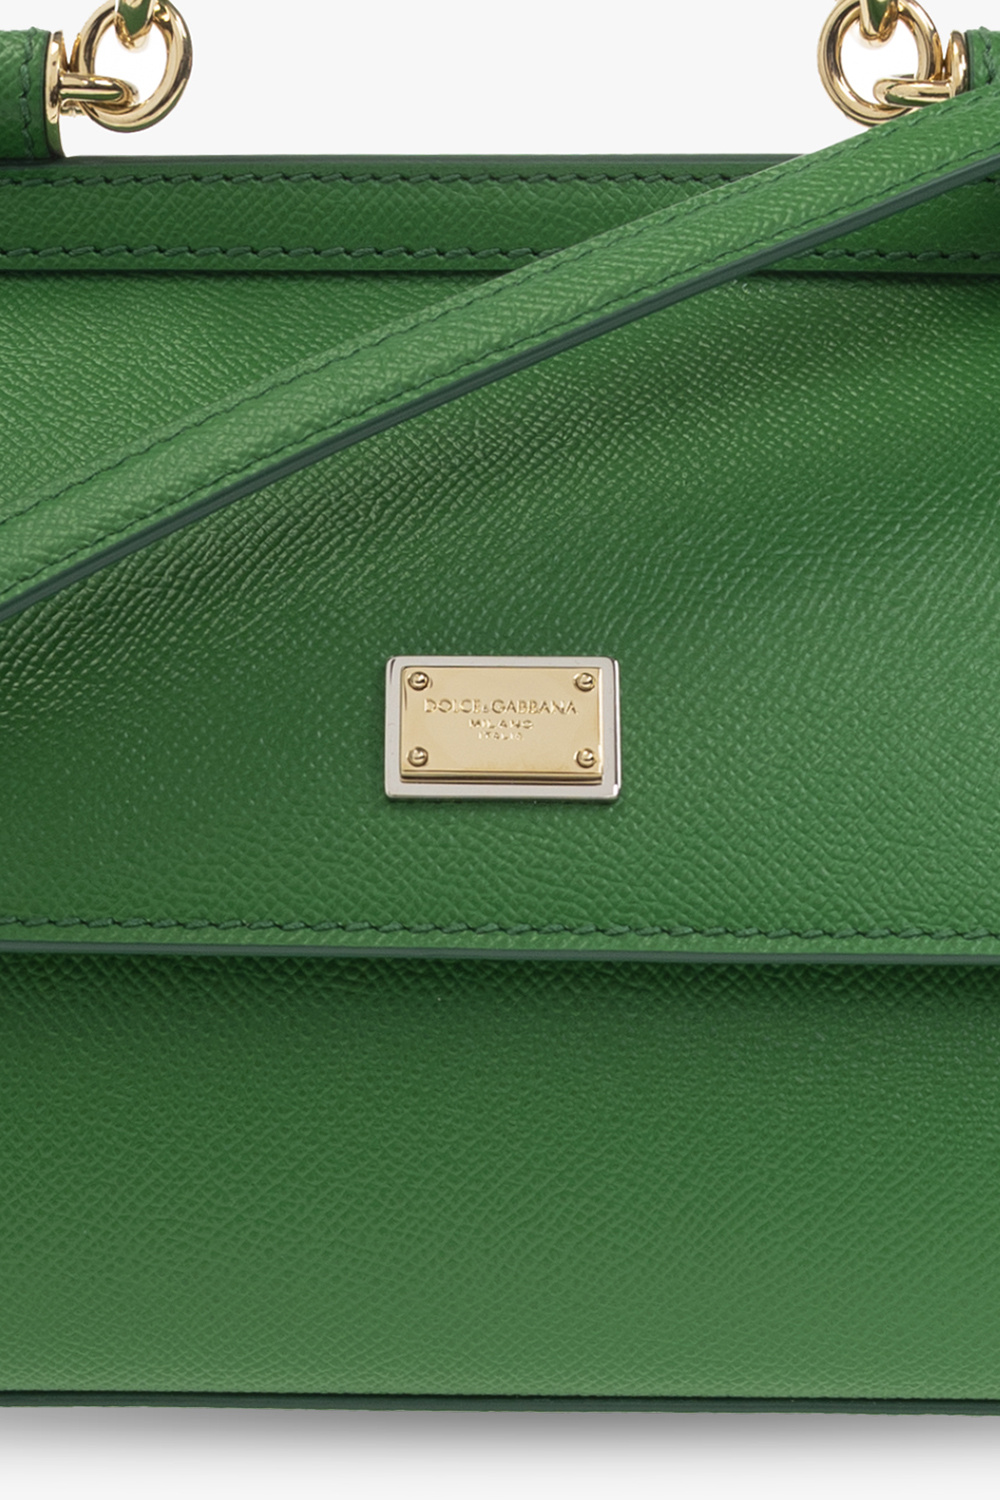 Dolce & Gabbana Green Handbags on Sale